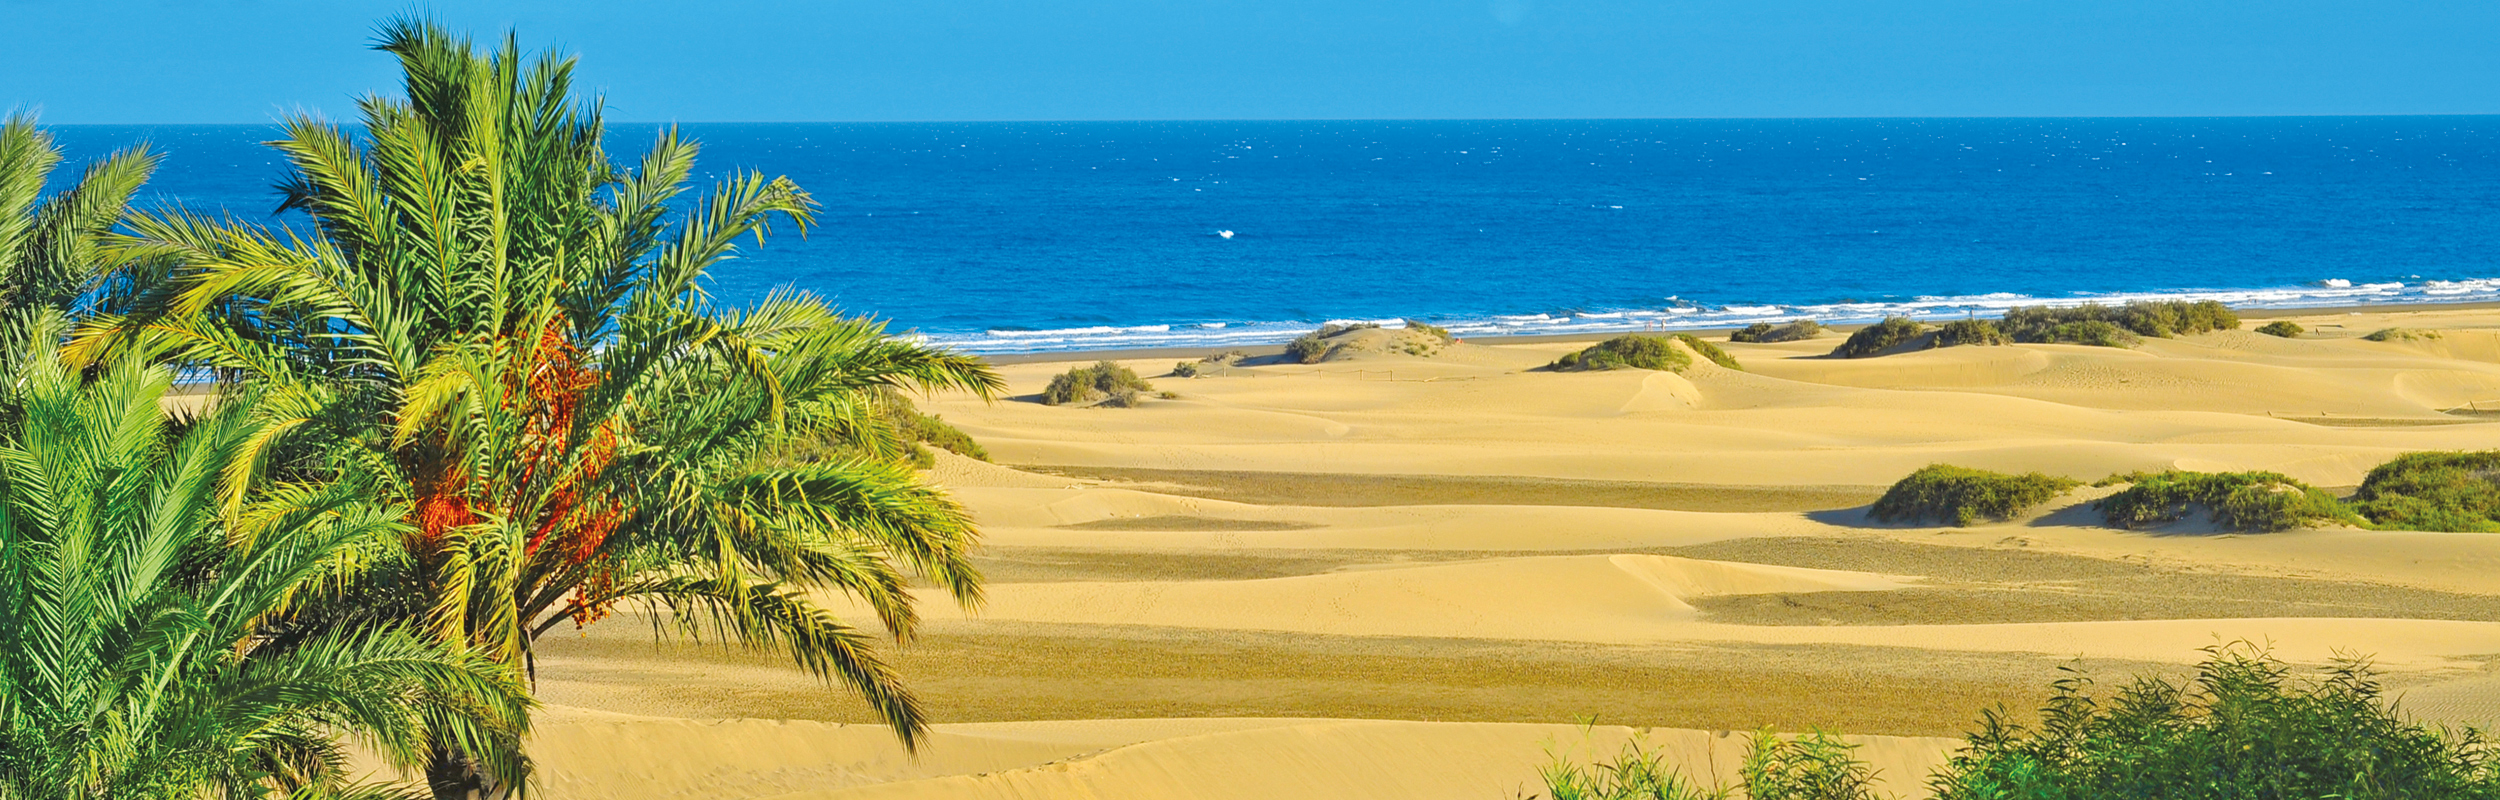 Réserver vos prochaines vacances à Gran Canaria avec Liege Airport